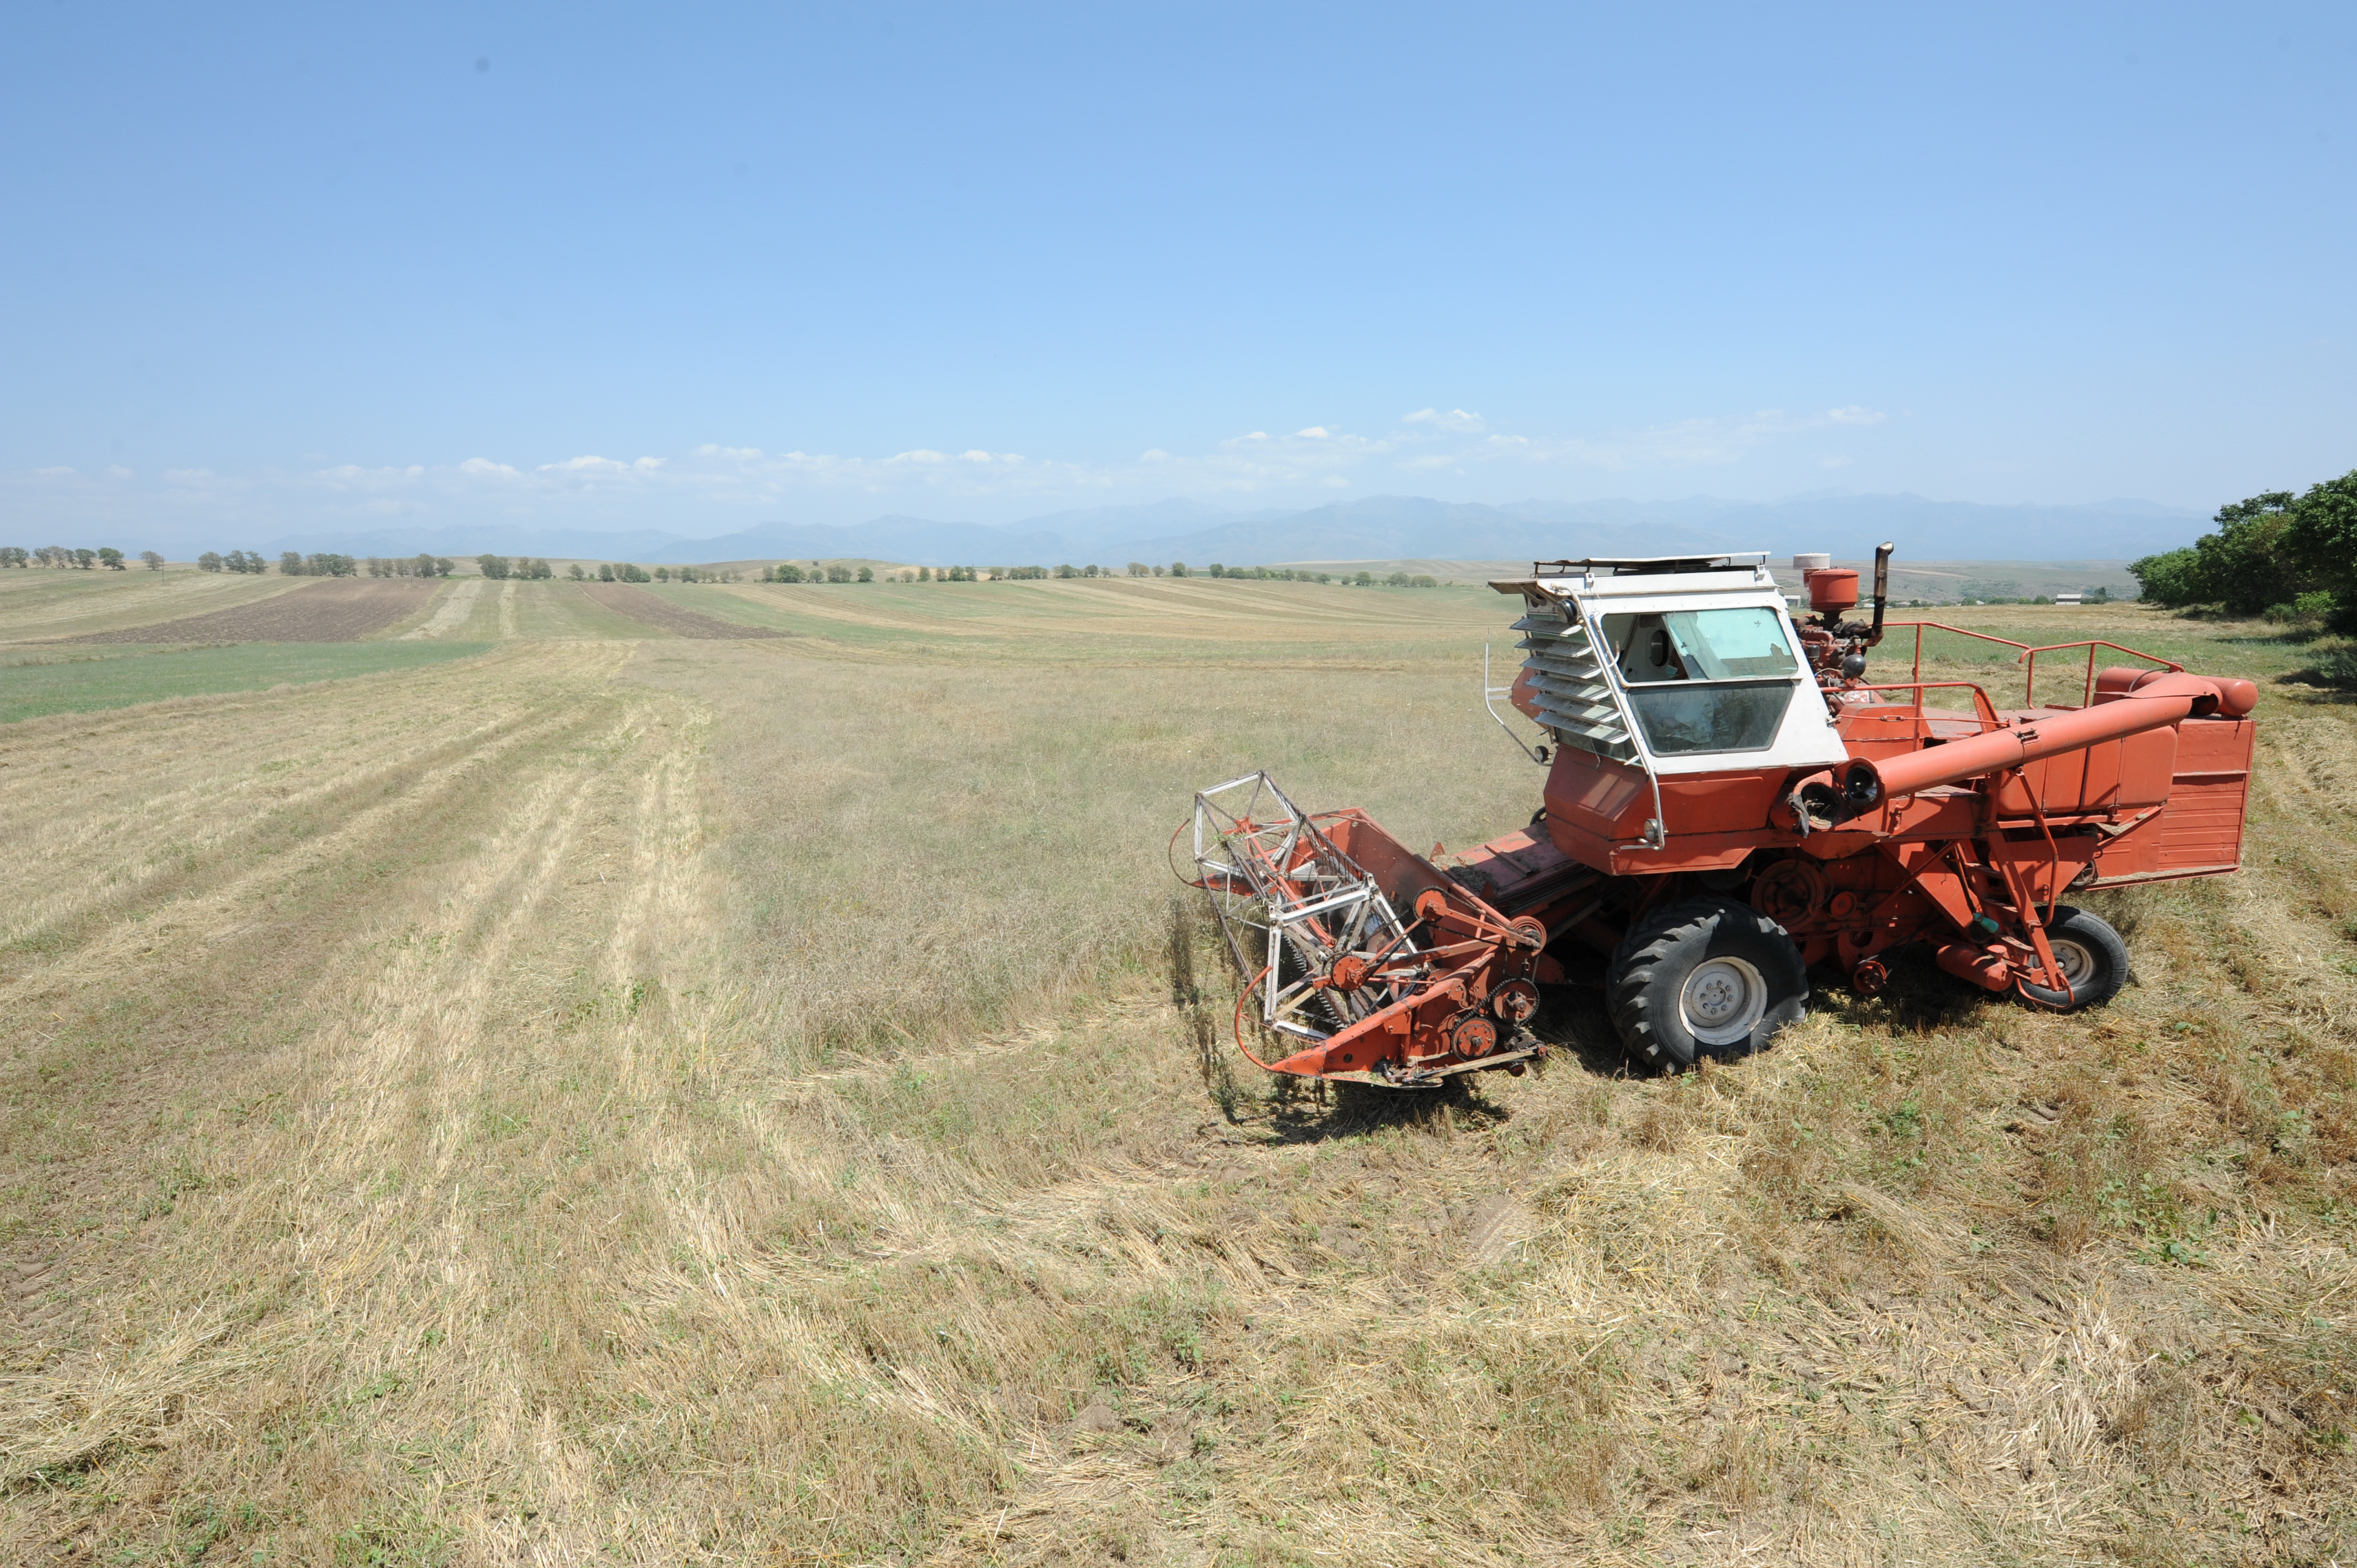 Замминистра: Армянские фермеры предпочитают продукцию белорусских производителей, которая дешевле и знакома с управлением